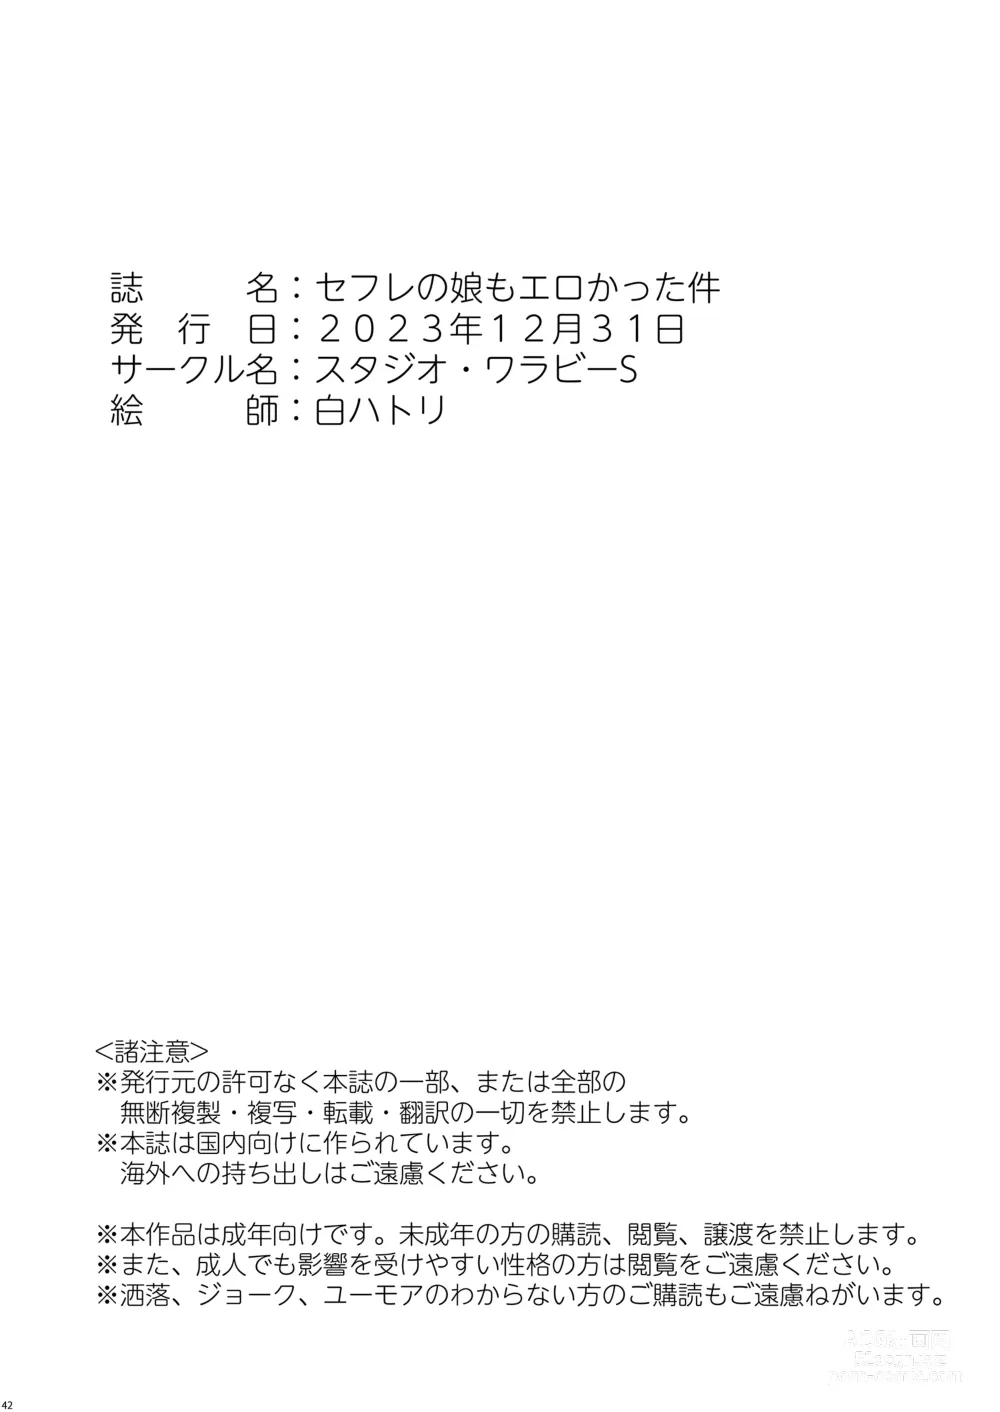 Page 41 of doujinshi SeFri no Musume mo Erokatta Ken